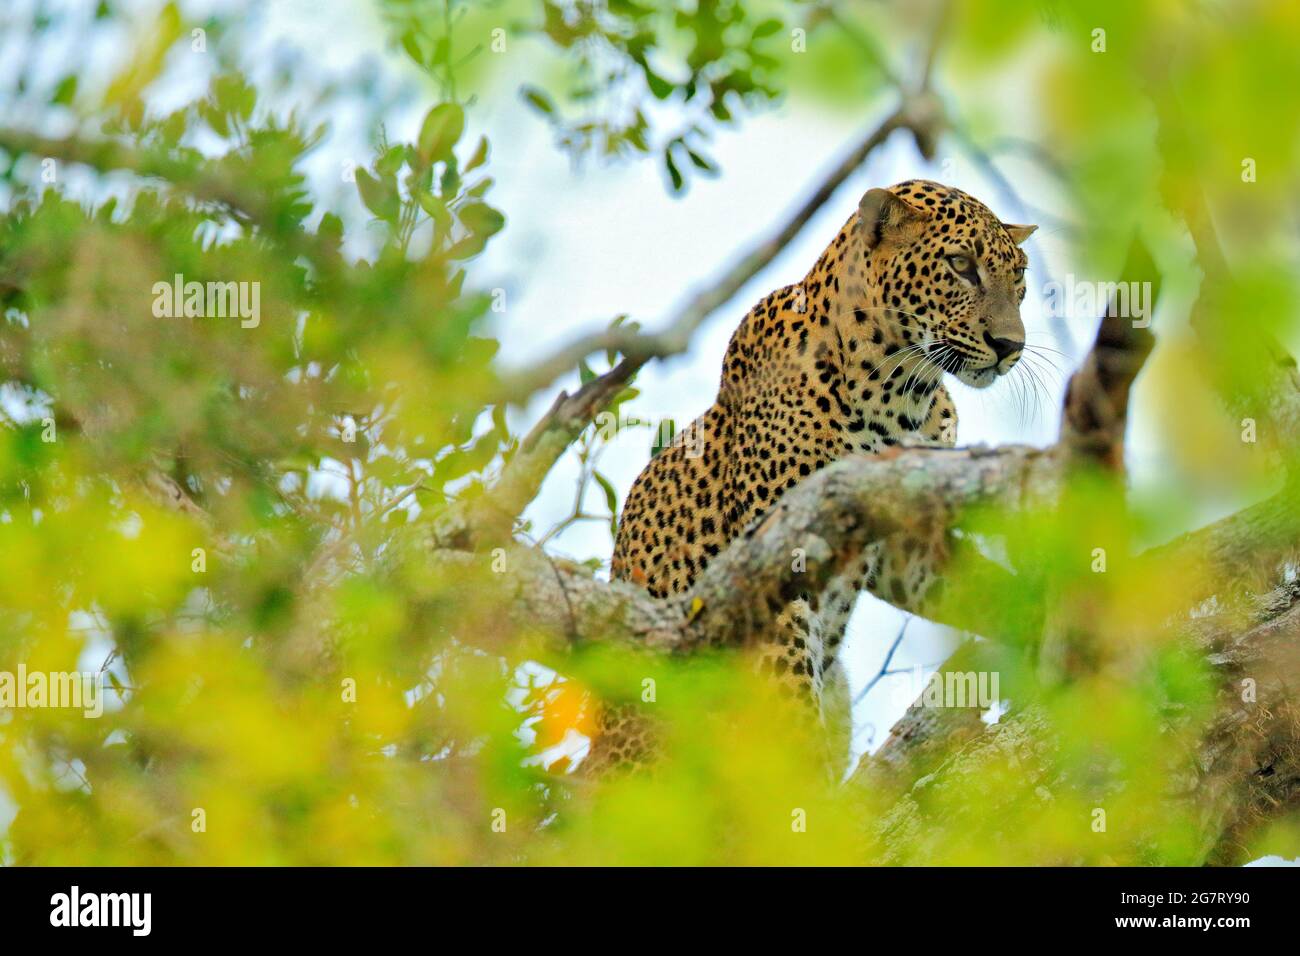 Léopard du Sri Lanka, Panthera pardus kotiya, grand chat tacheté allongé sur l'arbre dans l'habitat naturel, parc national de Yala, Sri Lanka. Leorad caché Banque D'Images